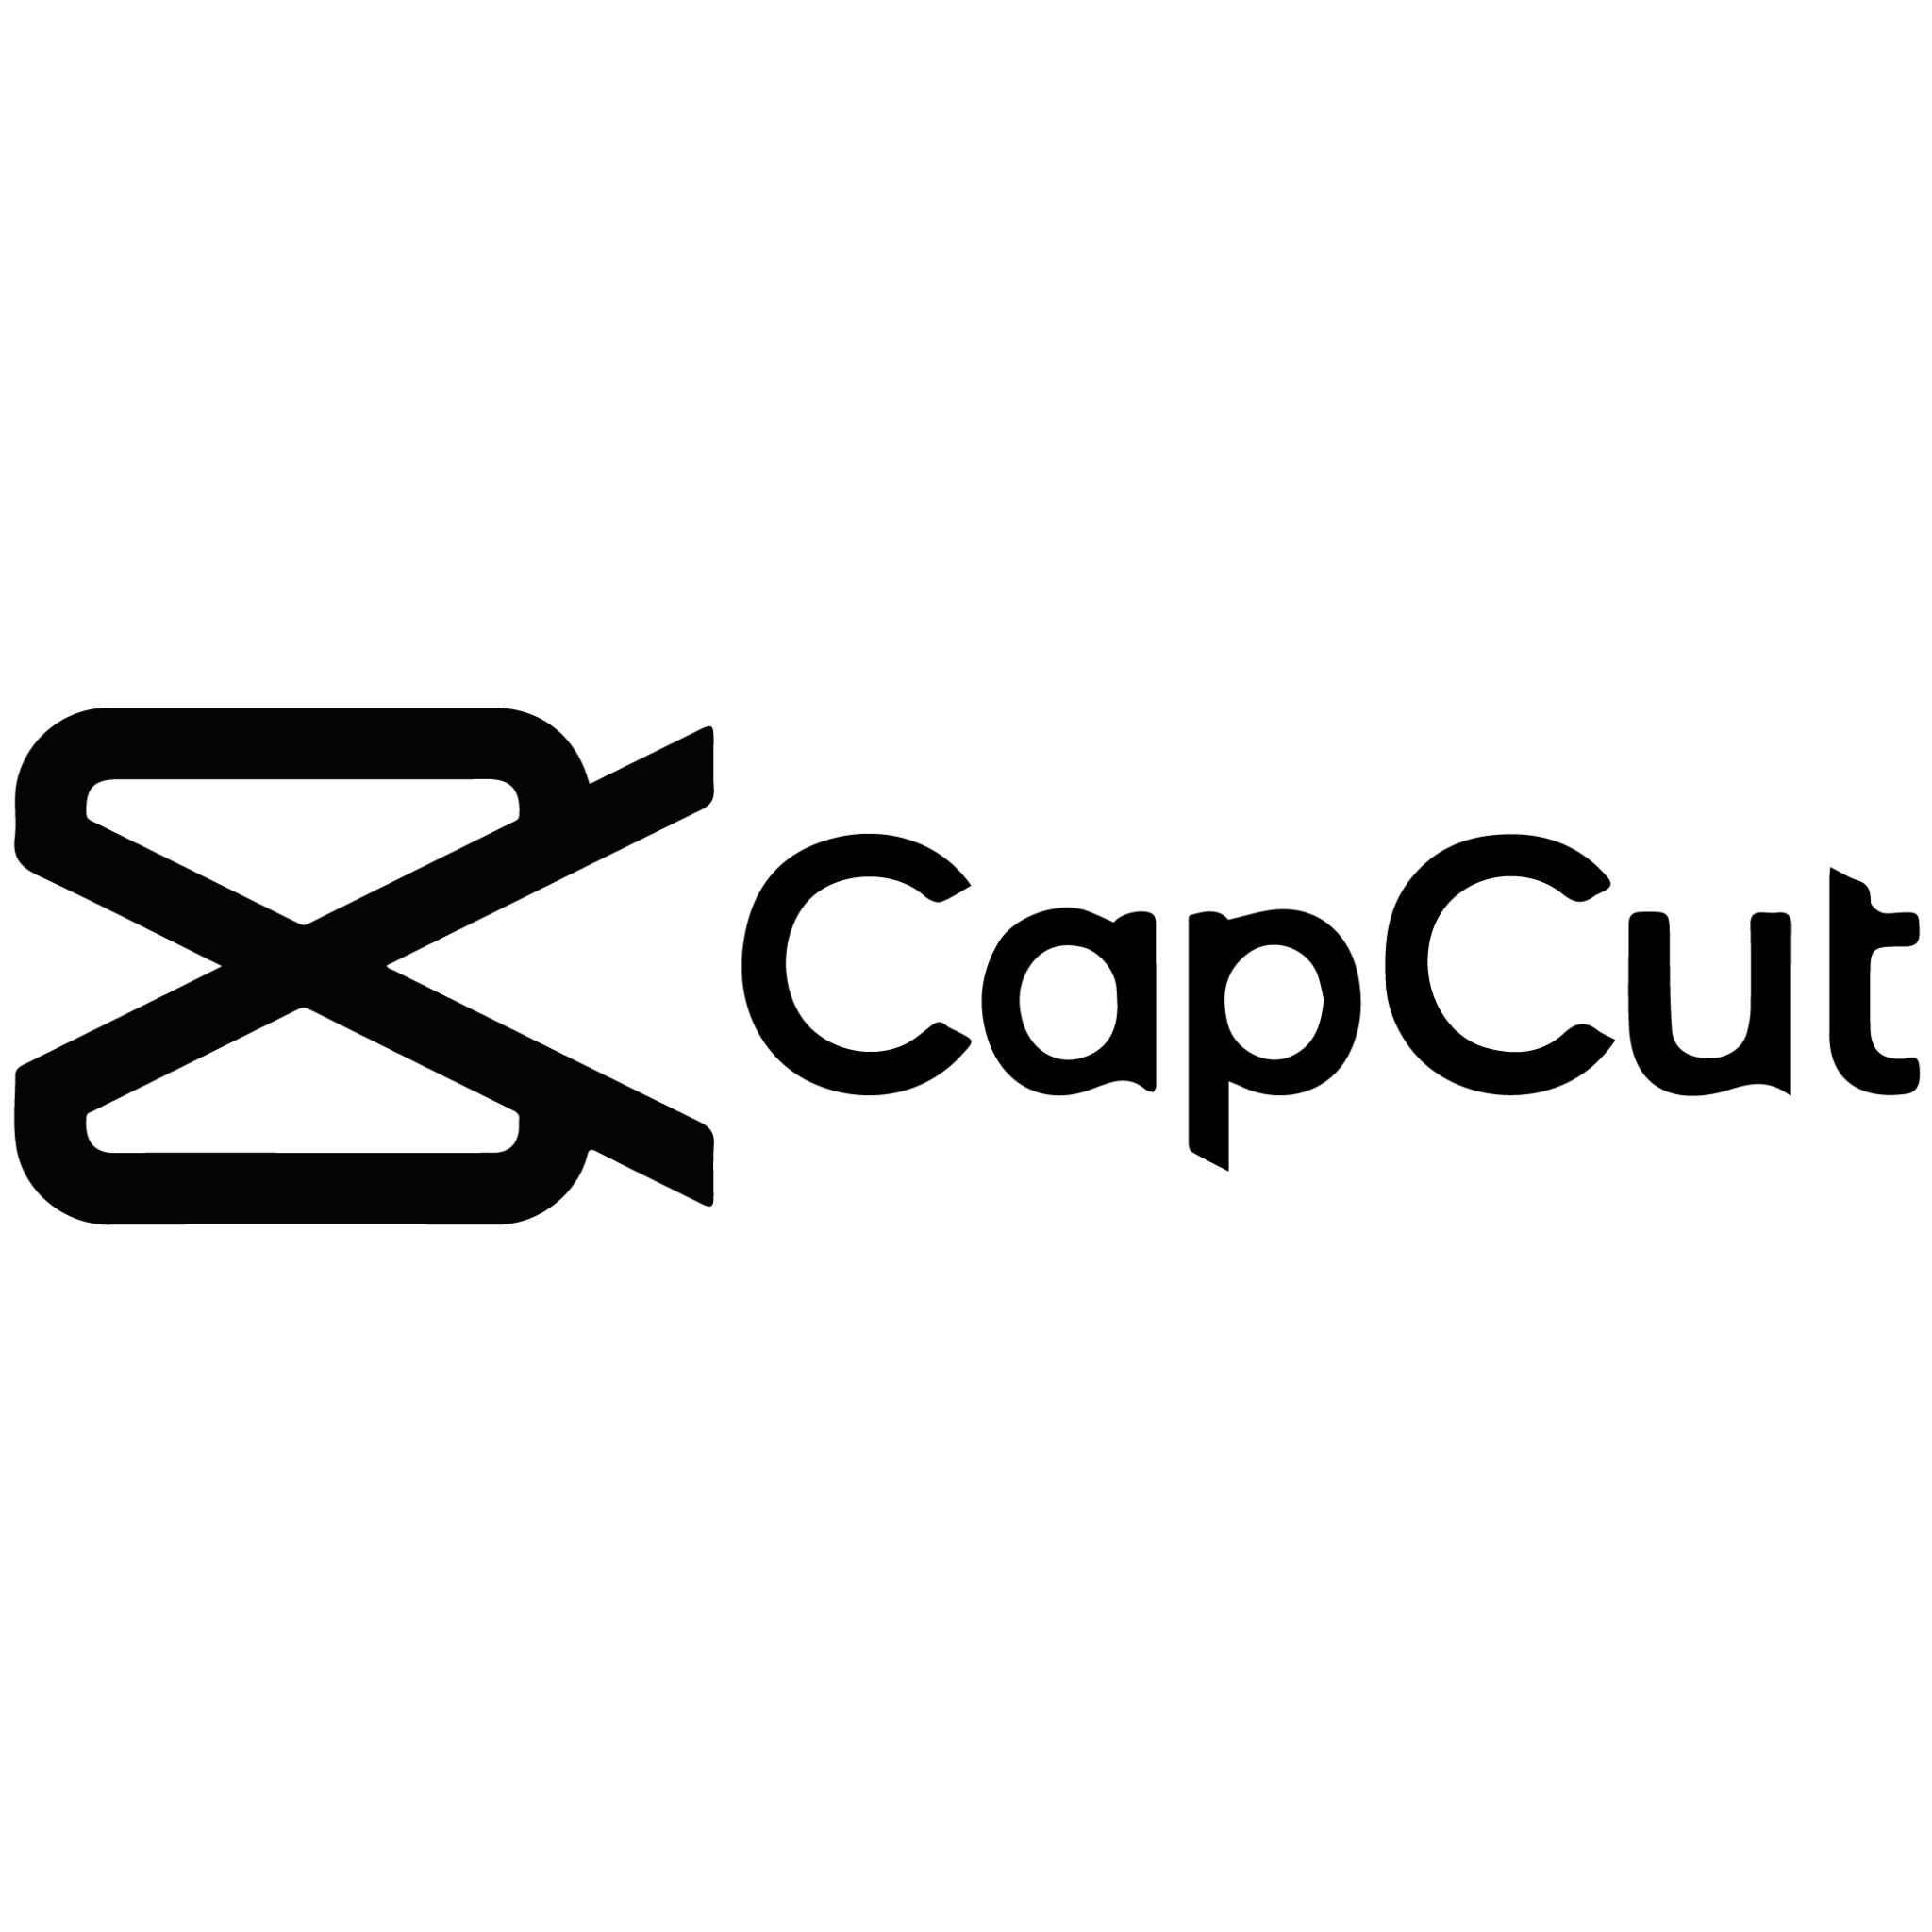 Capcut Logo PNG File